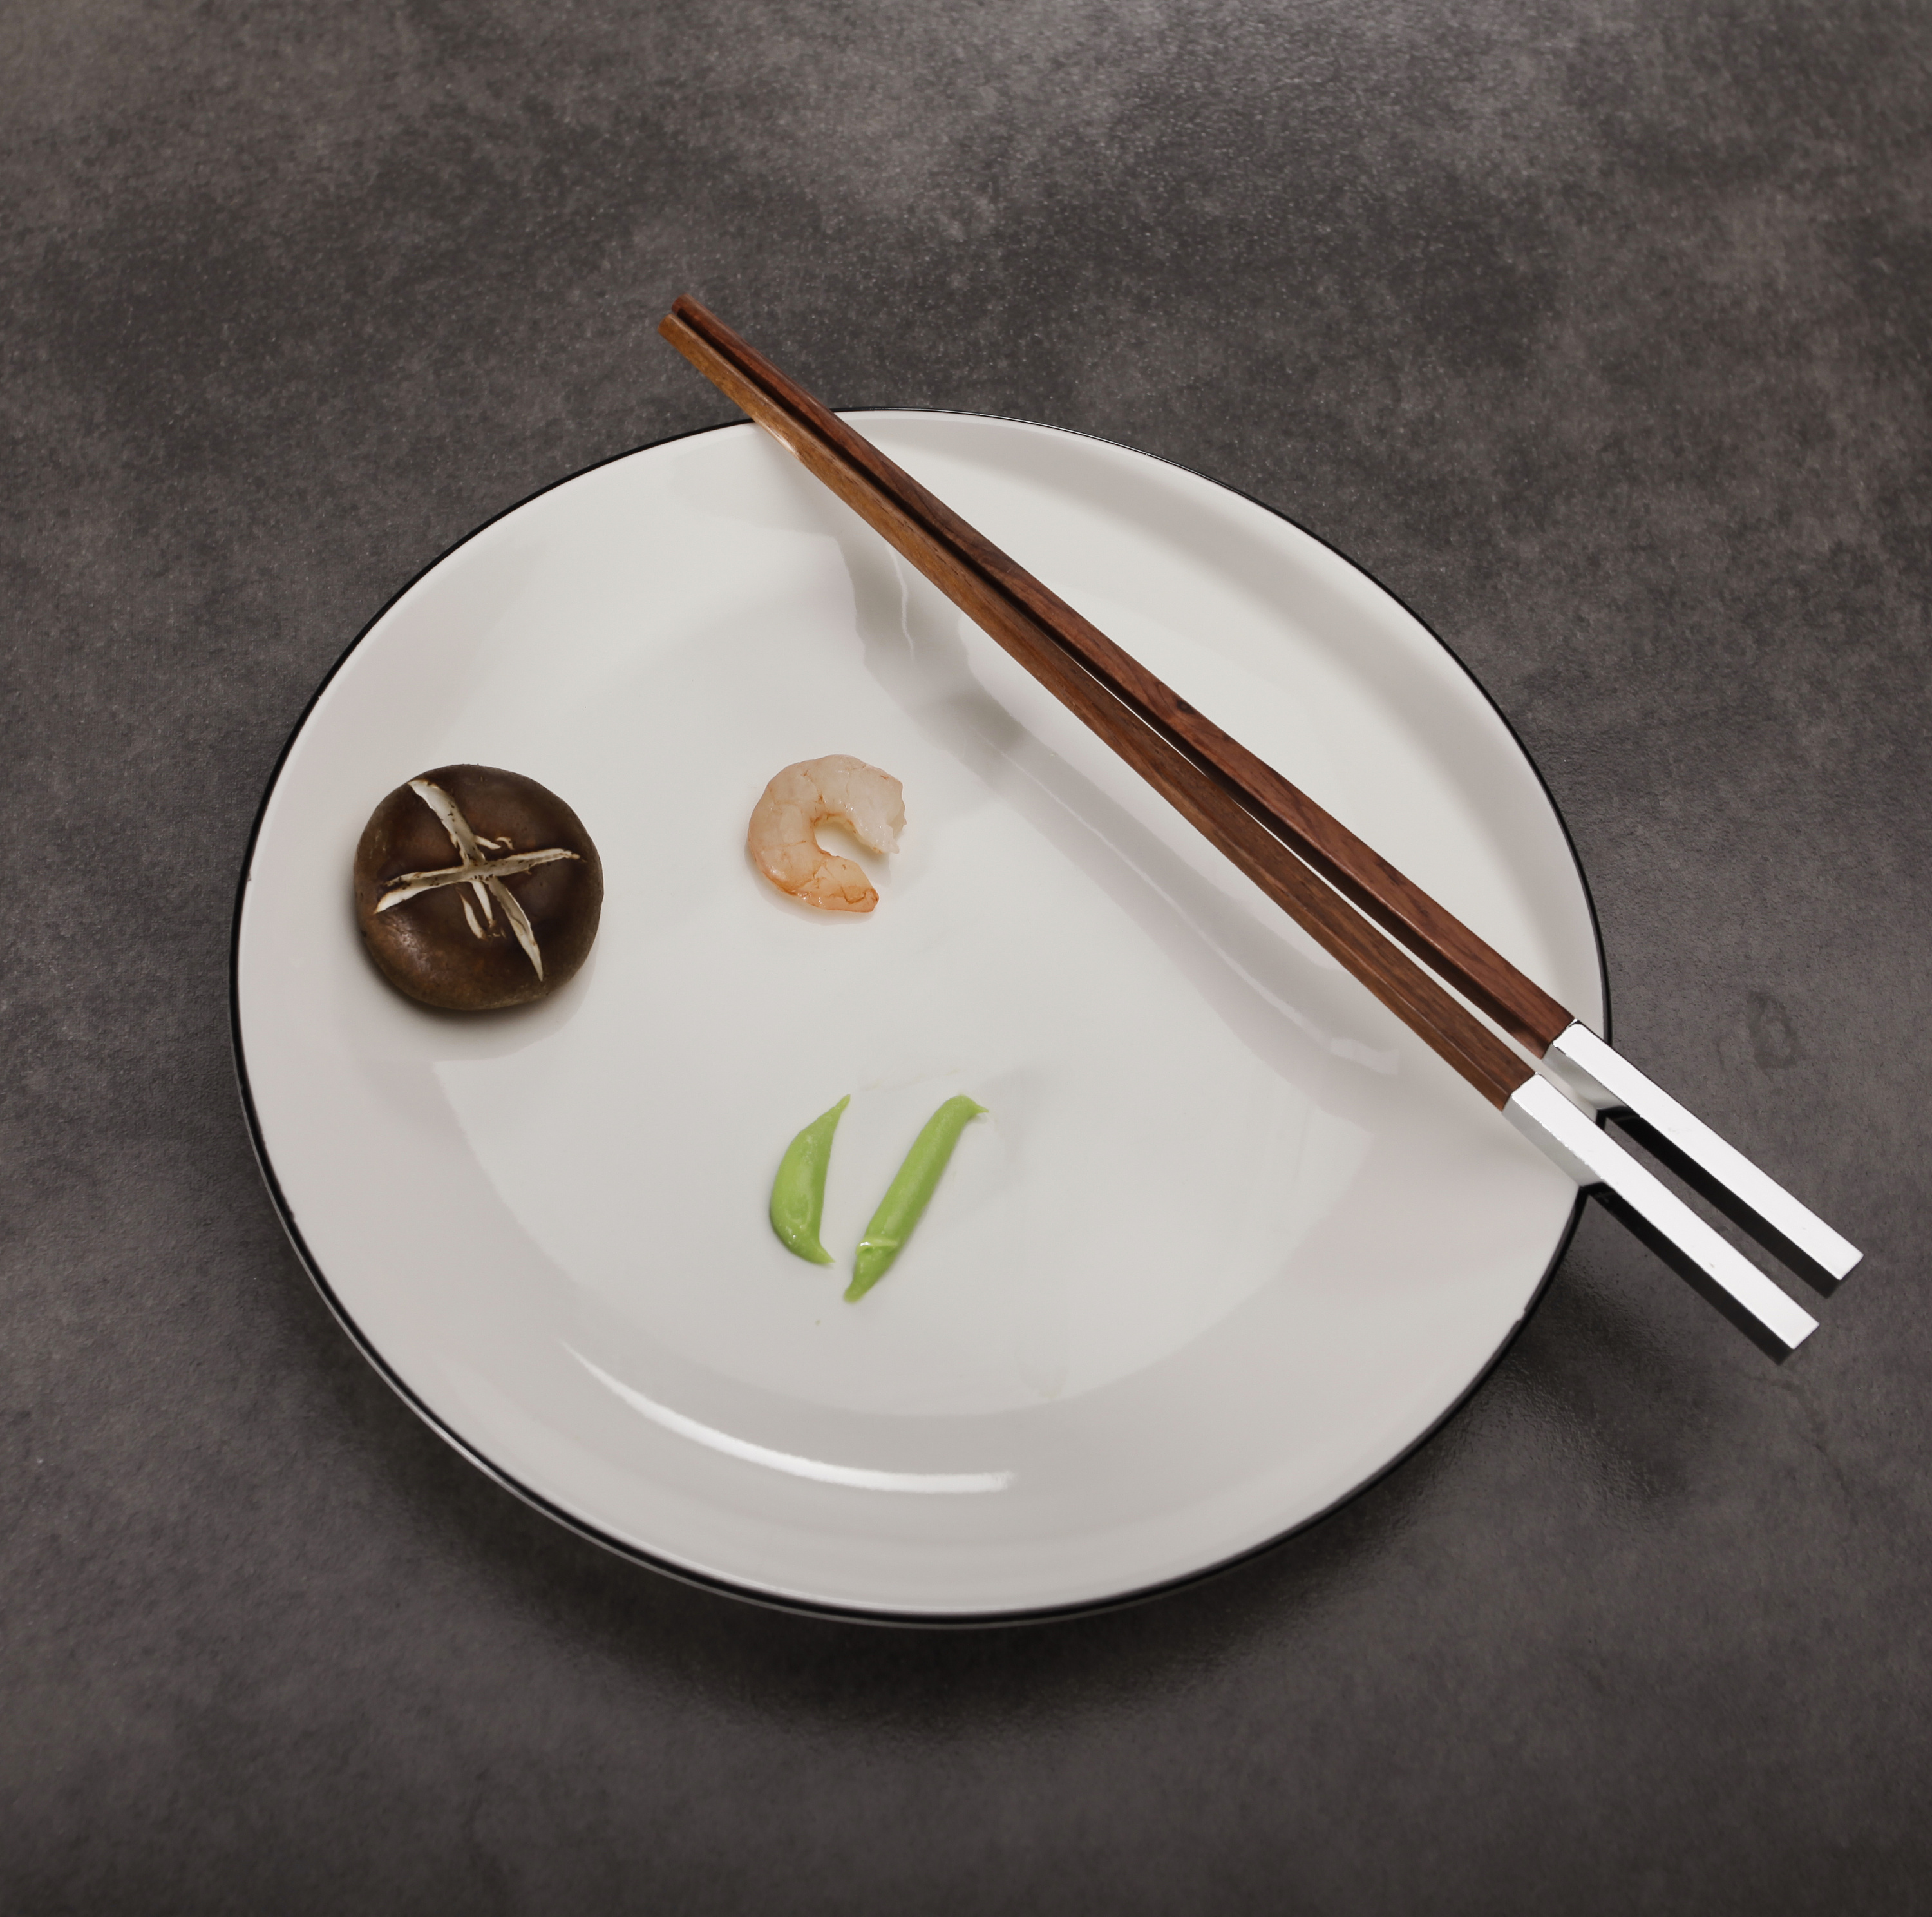 筷子是谁发明的 属于那个朝代的 历史故事是怎样的 | 壹视点